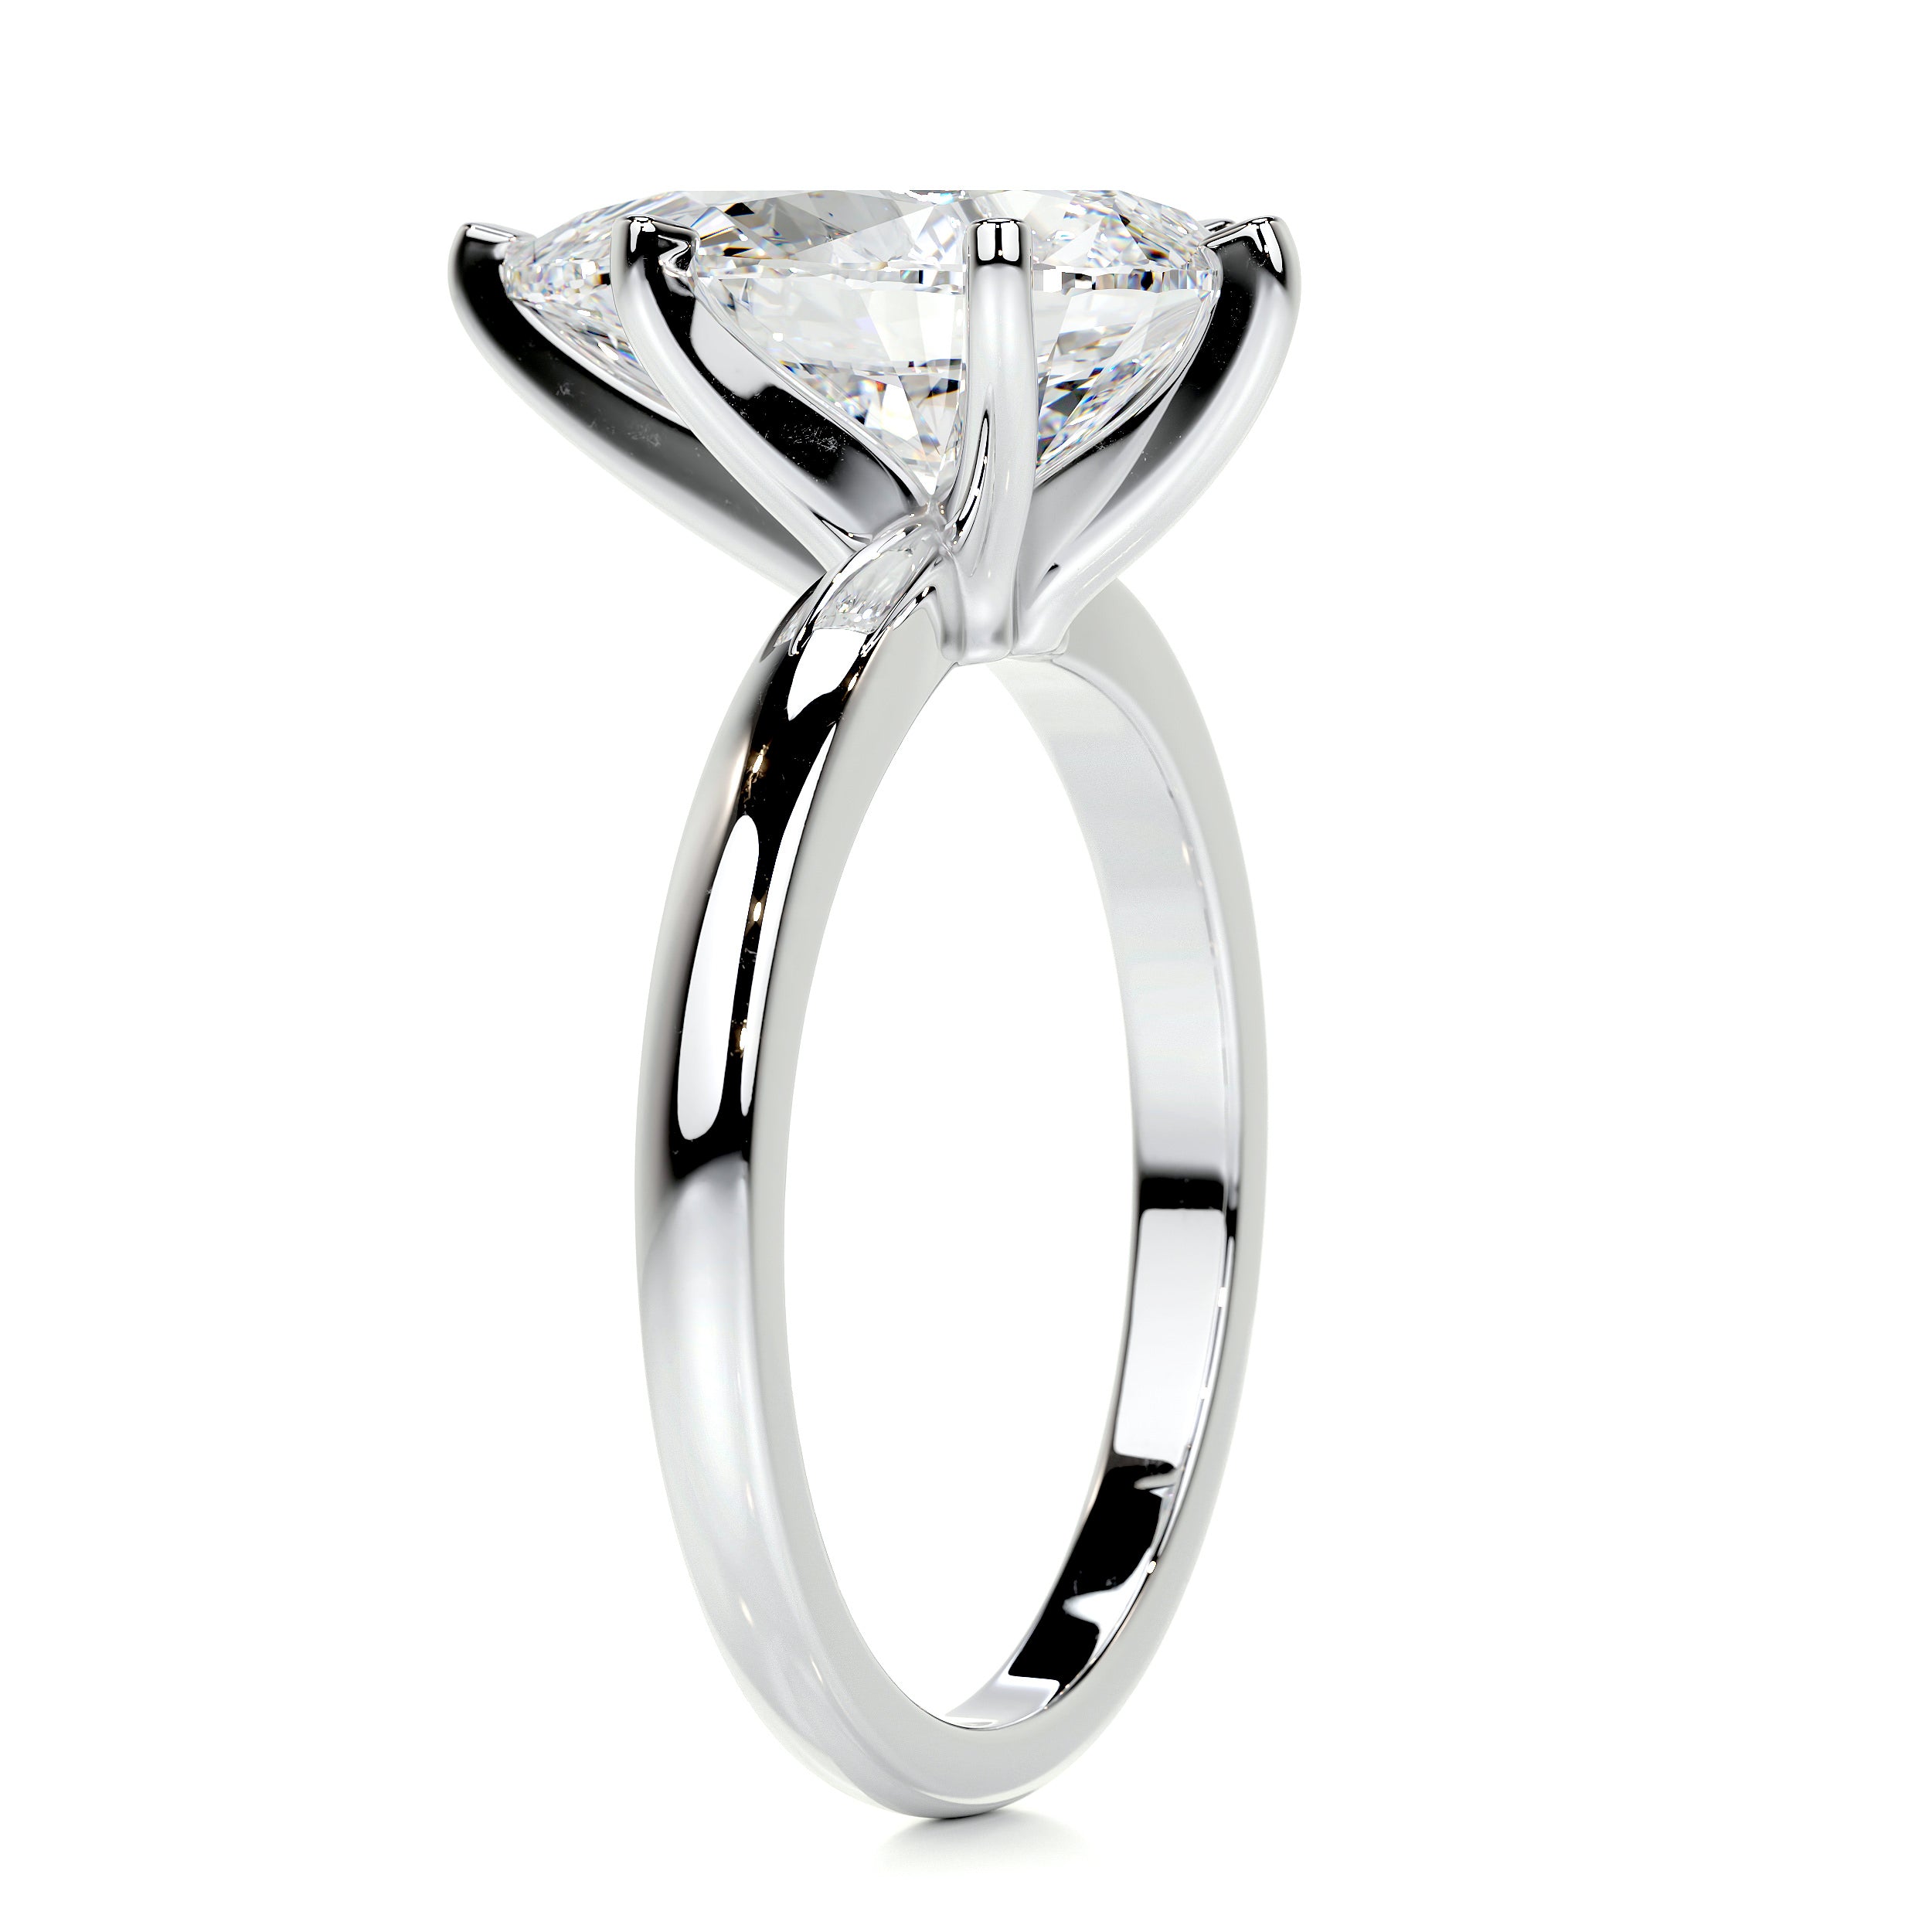 Adaline Diamond Engagement Ring   (1 Carat) -Platinum